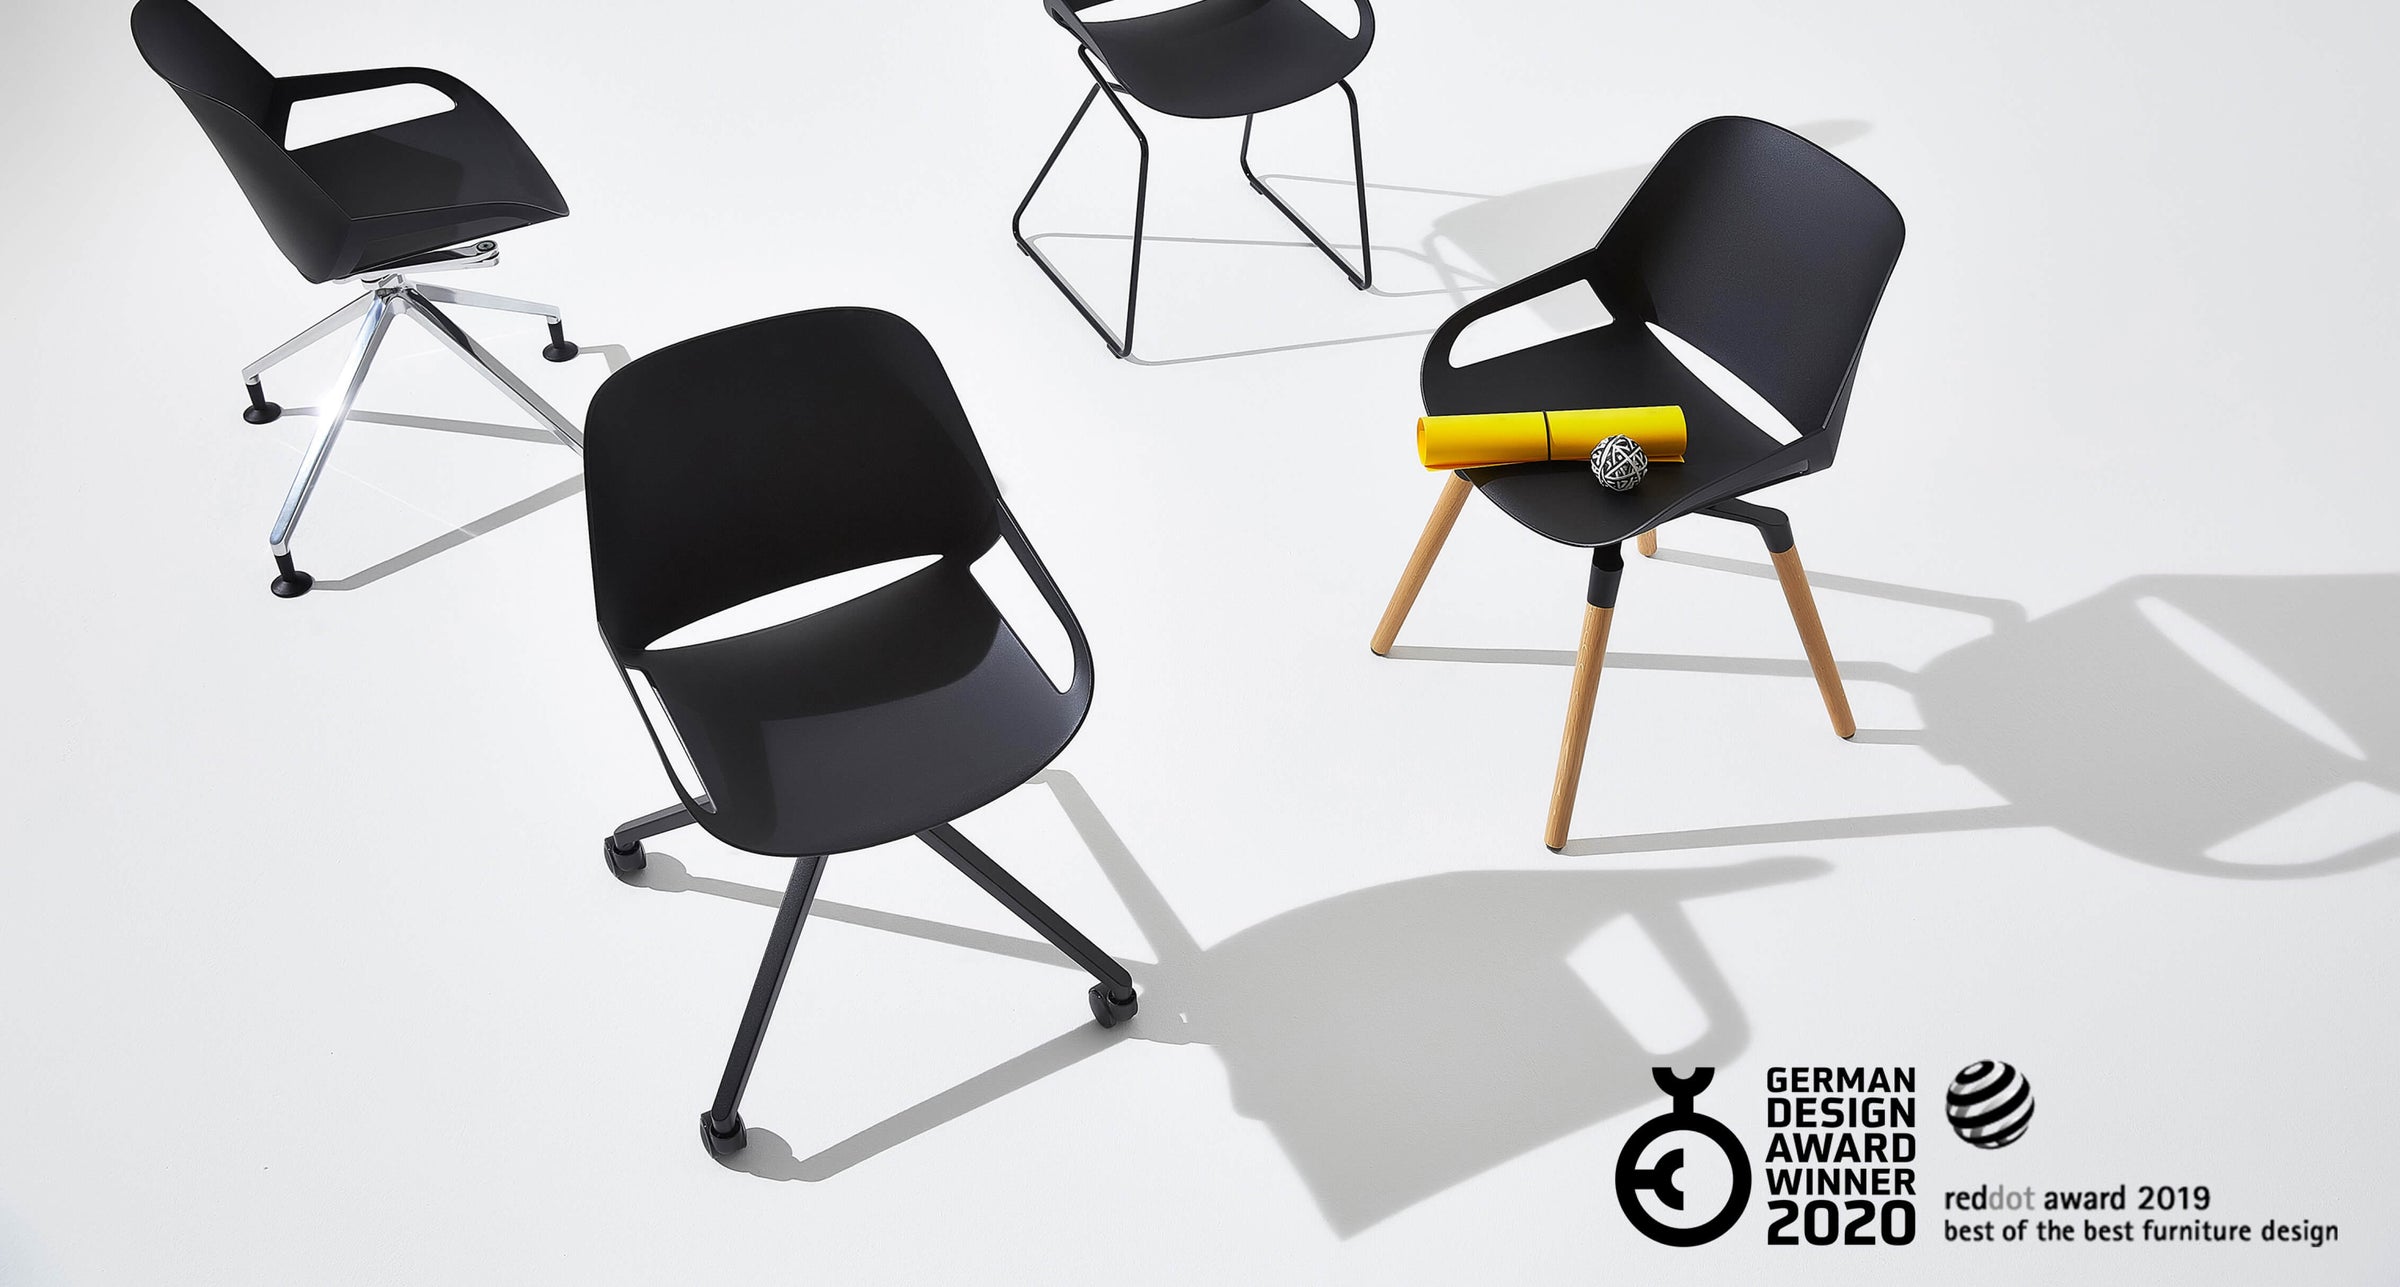 Aeris Numo design chair variants in black